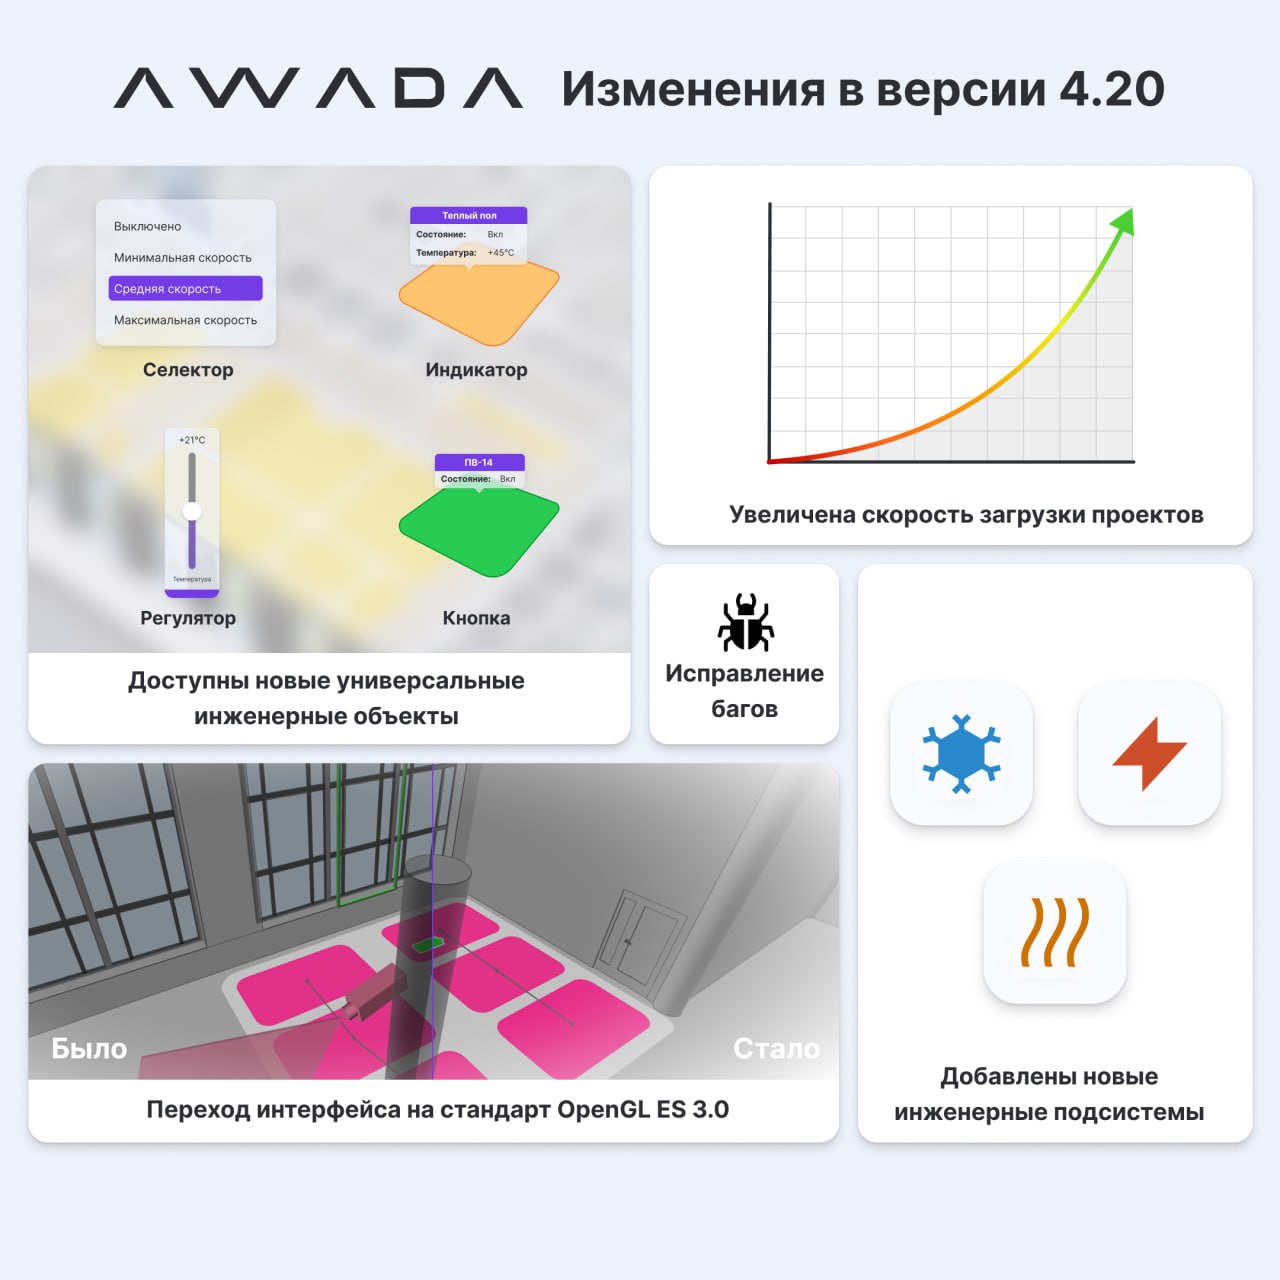 Новые возможности управления инженерным оборудованием с помощью приложения AWADA версии 4.20